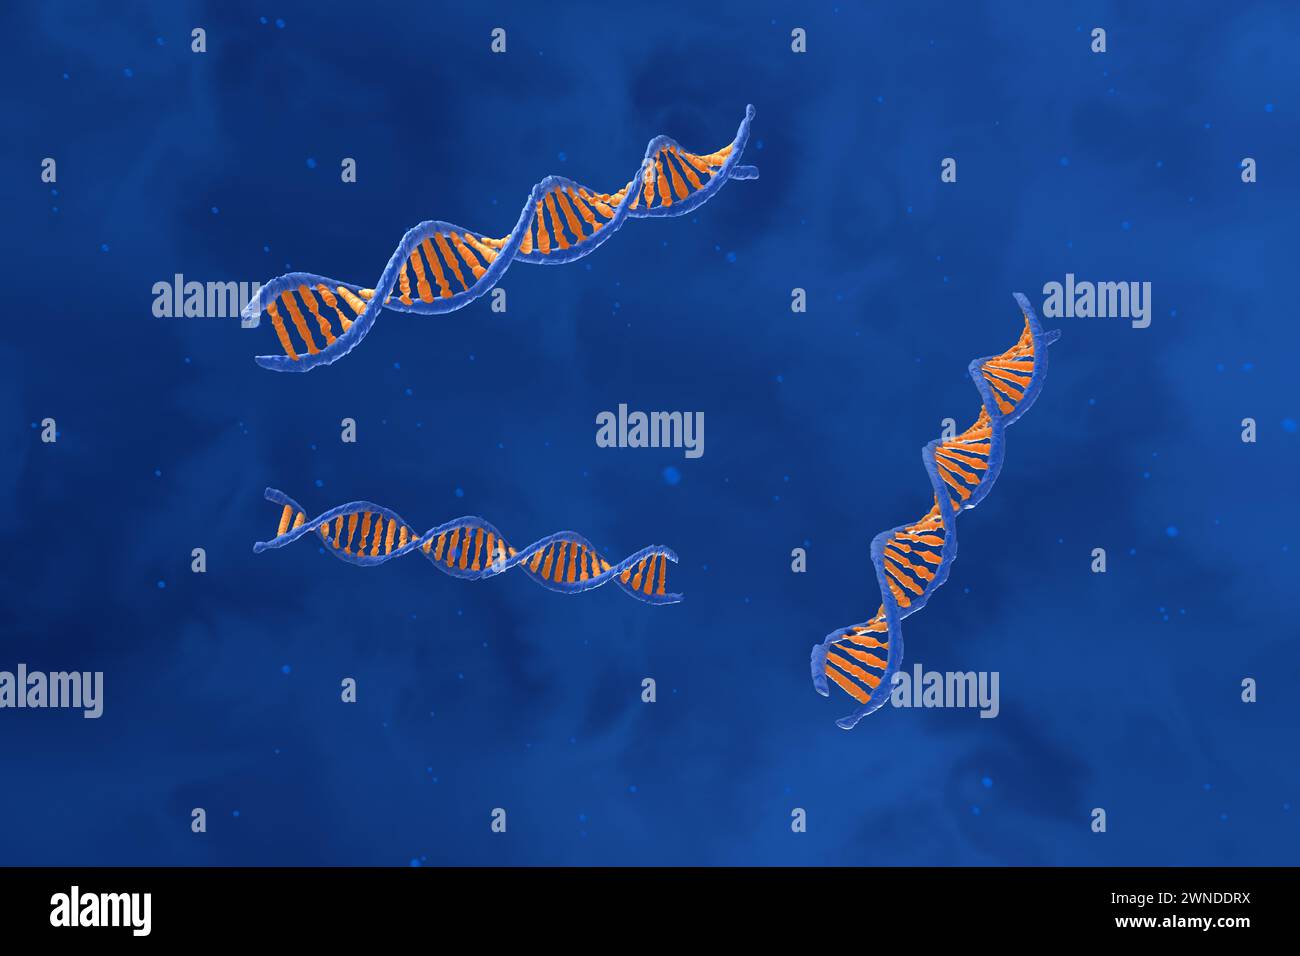 Molecola di DNA con spirale a doppio polinucleotide - Vista dall'alto, illustrazione 3d. Foto Stock